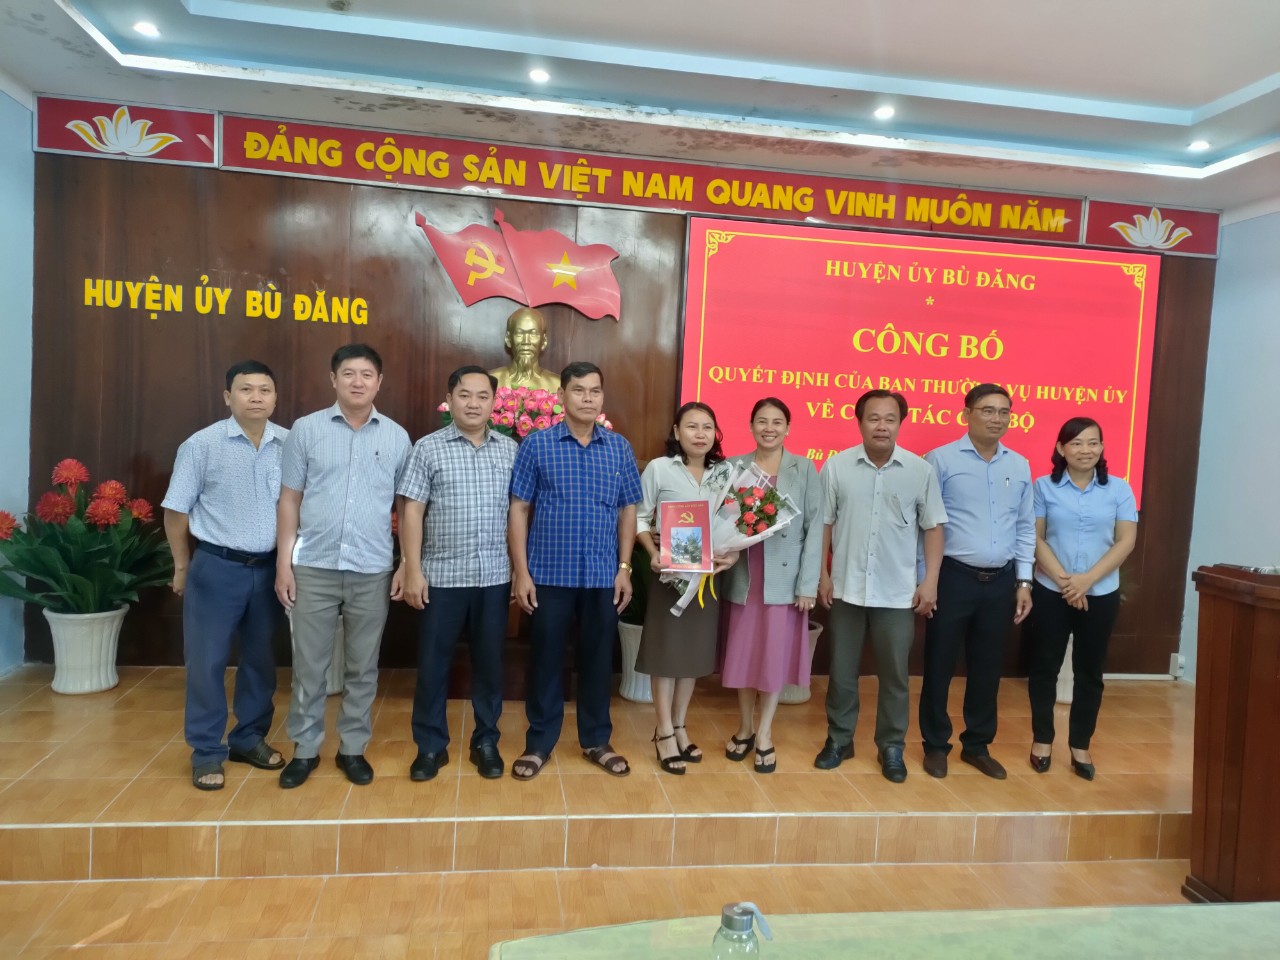 Phó Bí thư Thường trực Huyện uỷ, Chủ tịch HĐND huyện Nguyễn Tấn Hồng cùng các đại biểu tại buổi lễ công bố quyết định